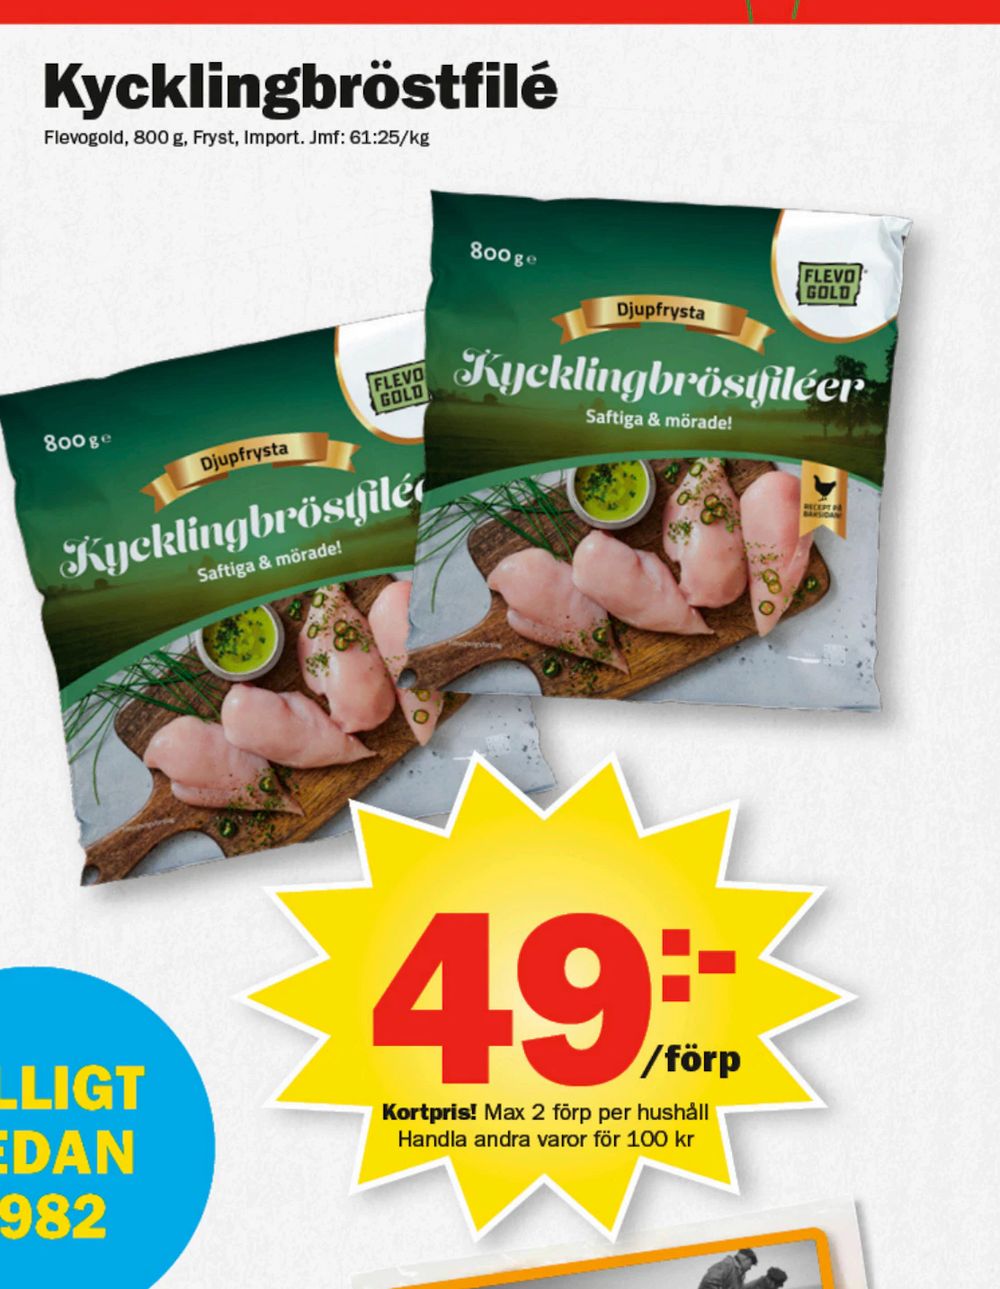 Erbjudanden på Kycklingbröstfilé från Pekås för 49 kr